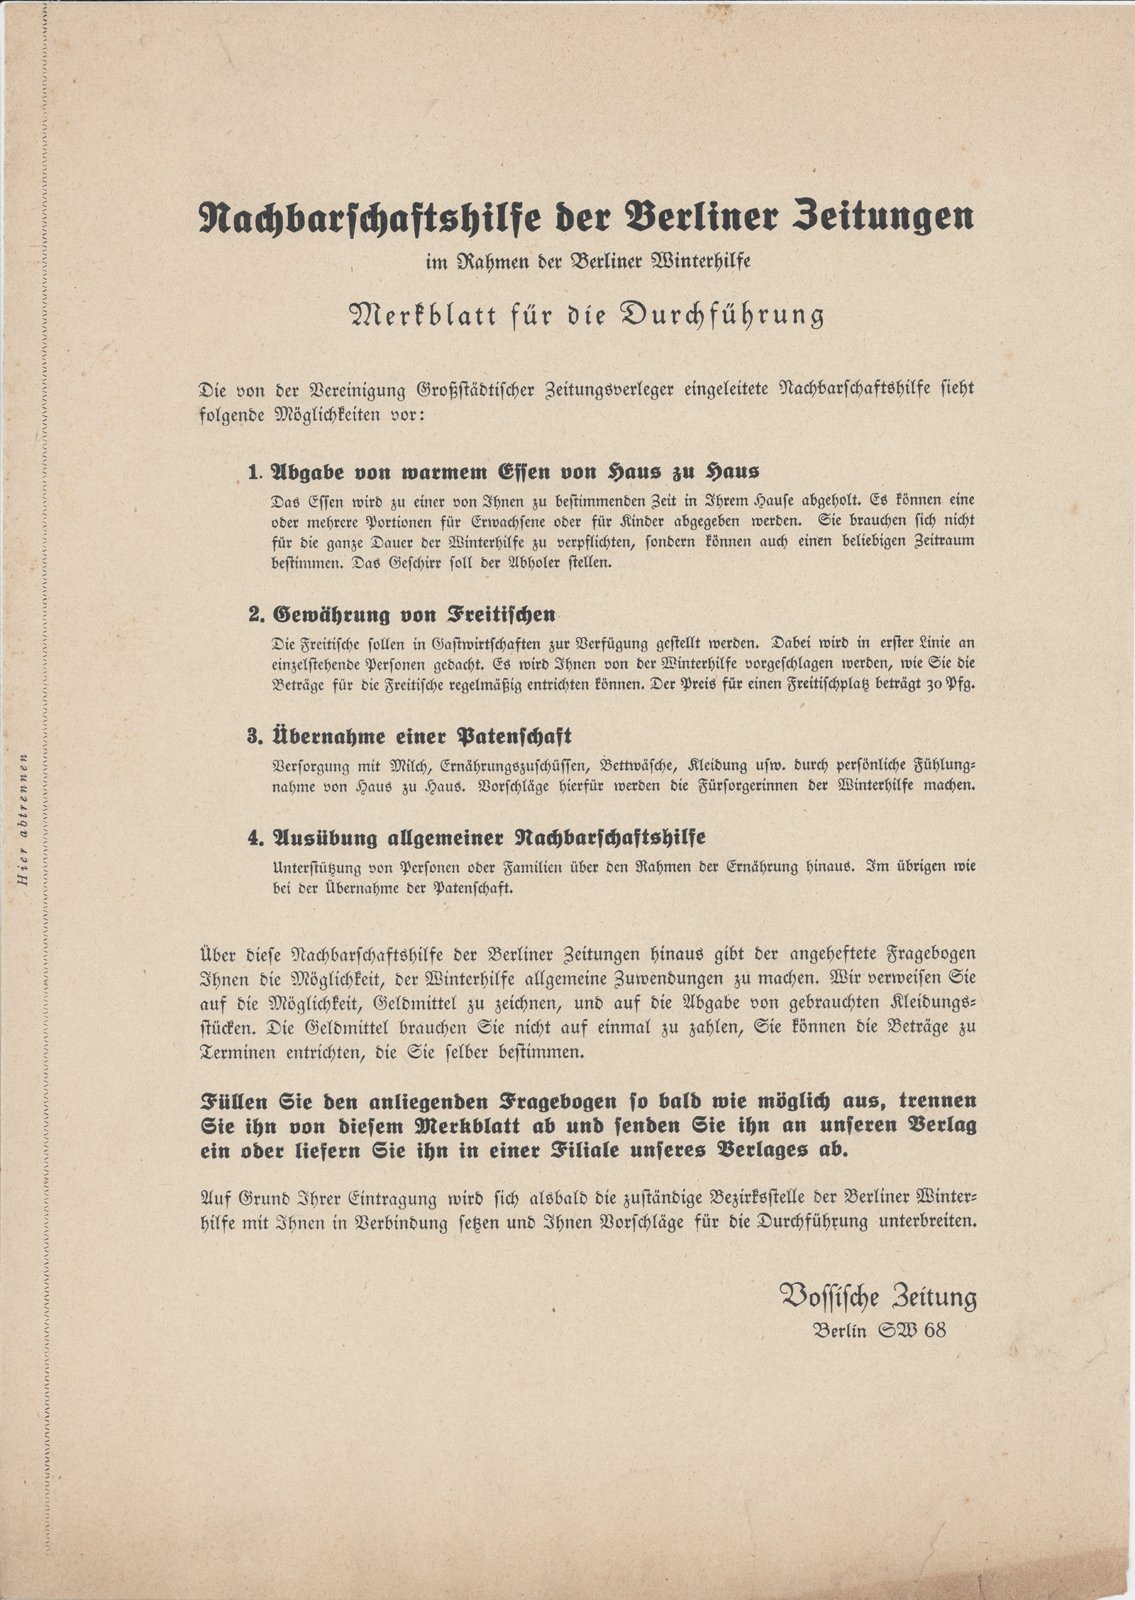 Vossische Zeitung-Dobert, 1931 (Heimatverein "Alter Krug" Zossen e.V. CC BY-NC-SA)